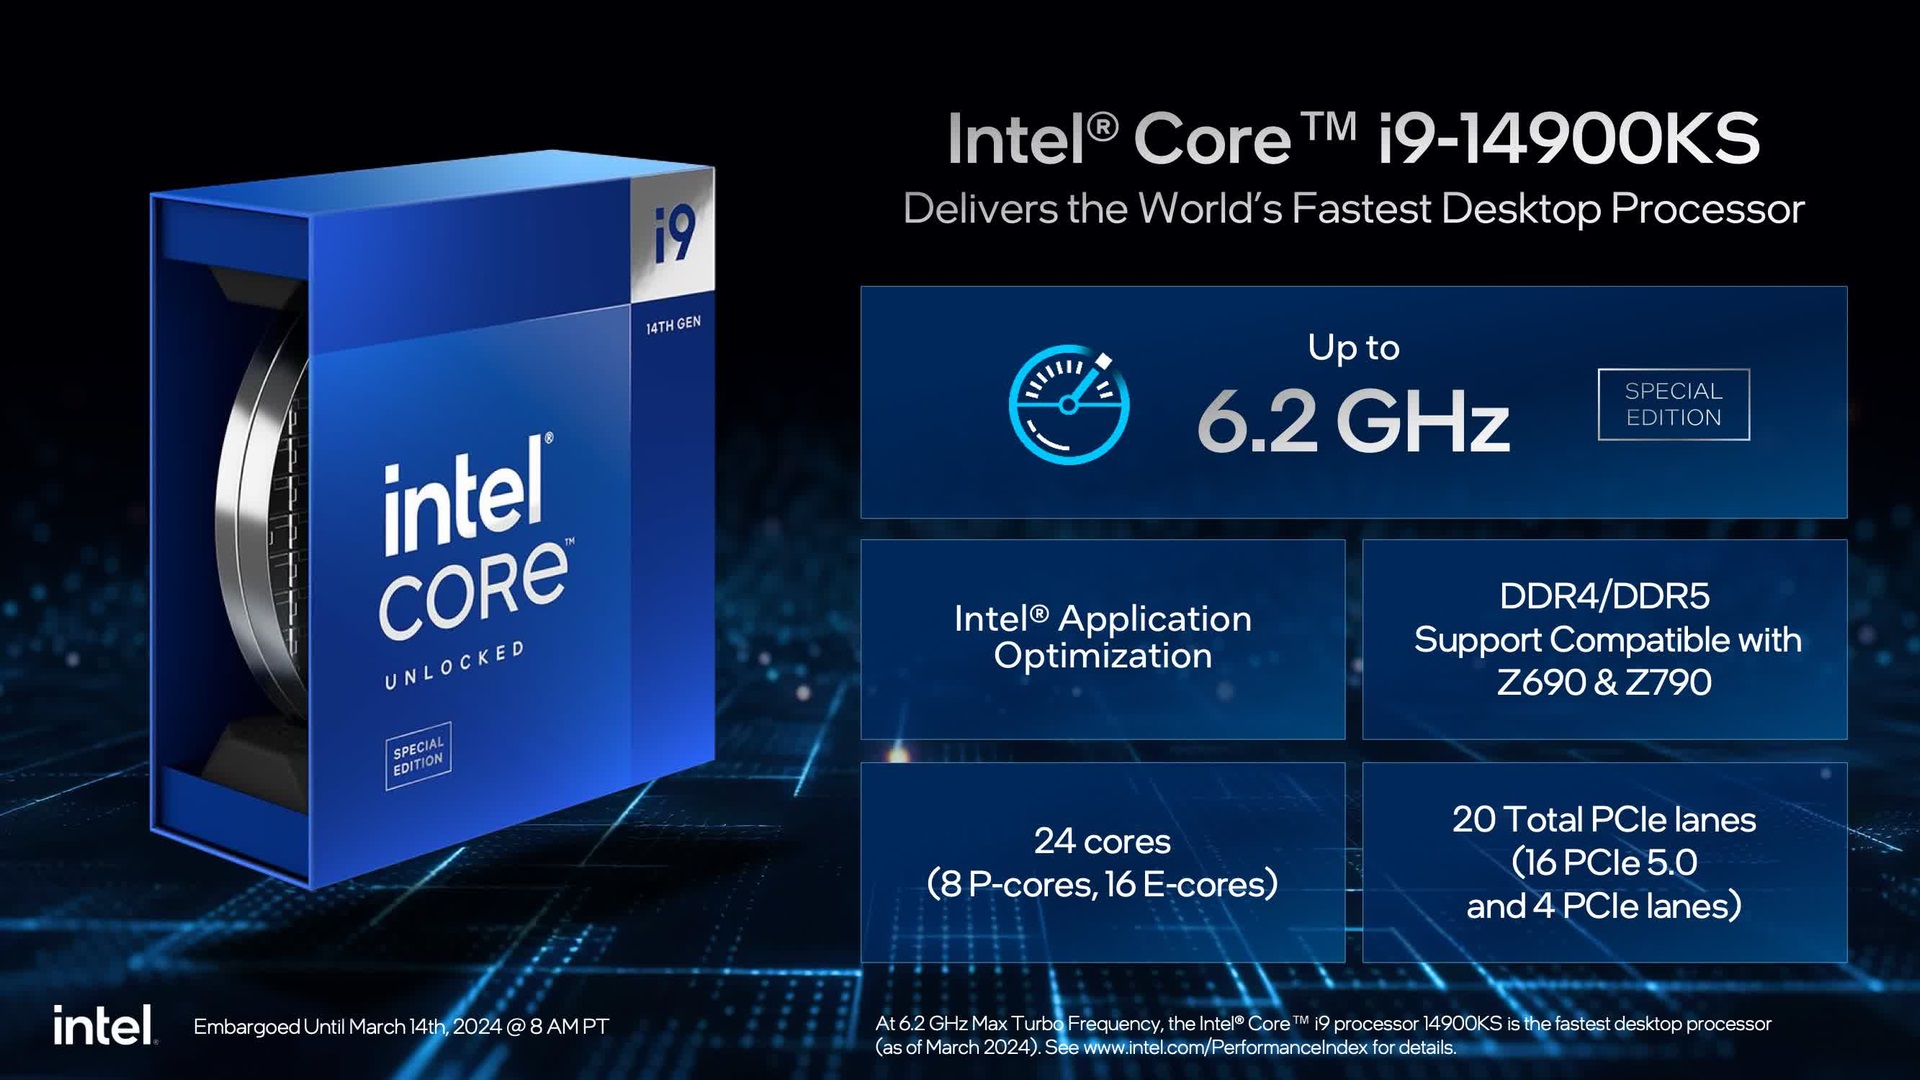 Test Intel Core i9-14900K. Mało śmieszny żart niebieskich